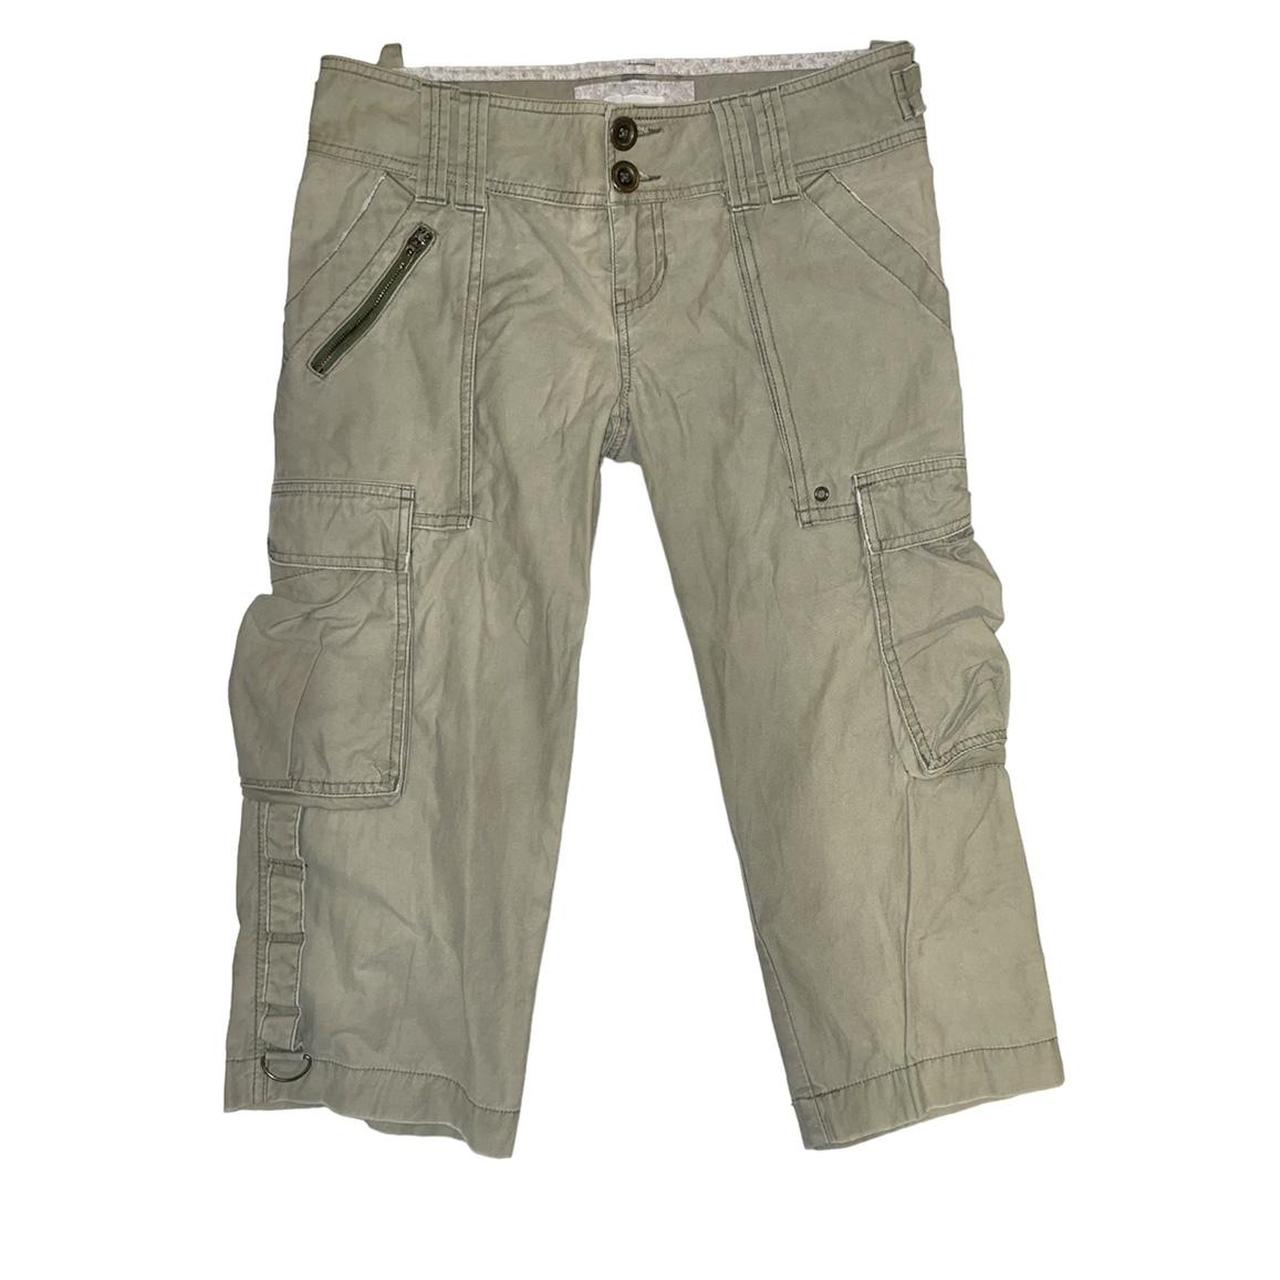 Cotton Denims & Trousers Men Trouser Pants, Regular Fit at Rs 240 in Howrah